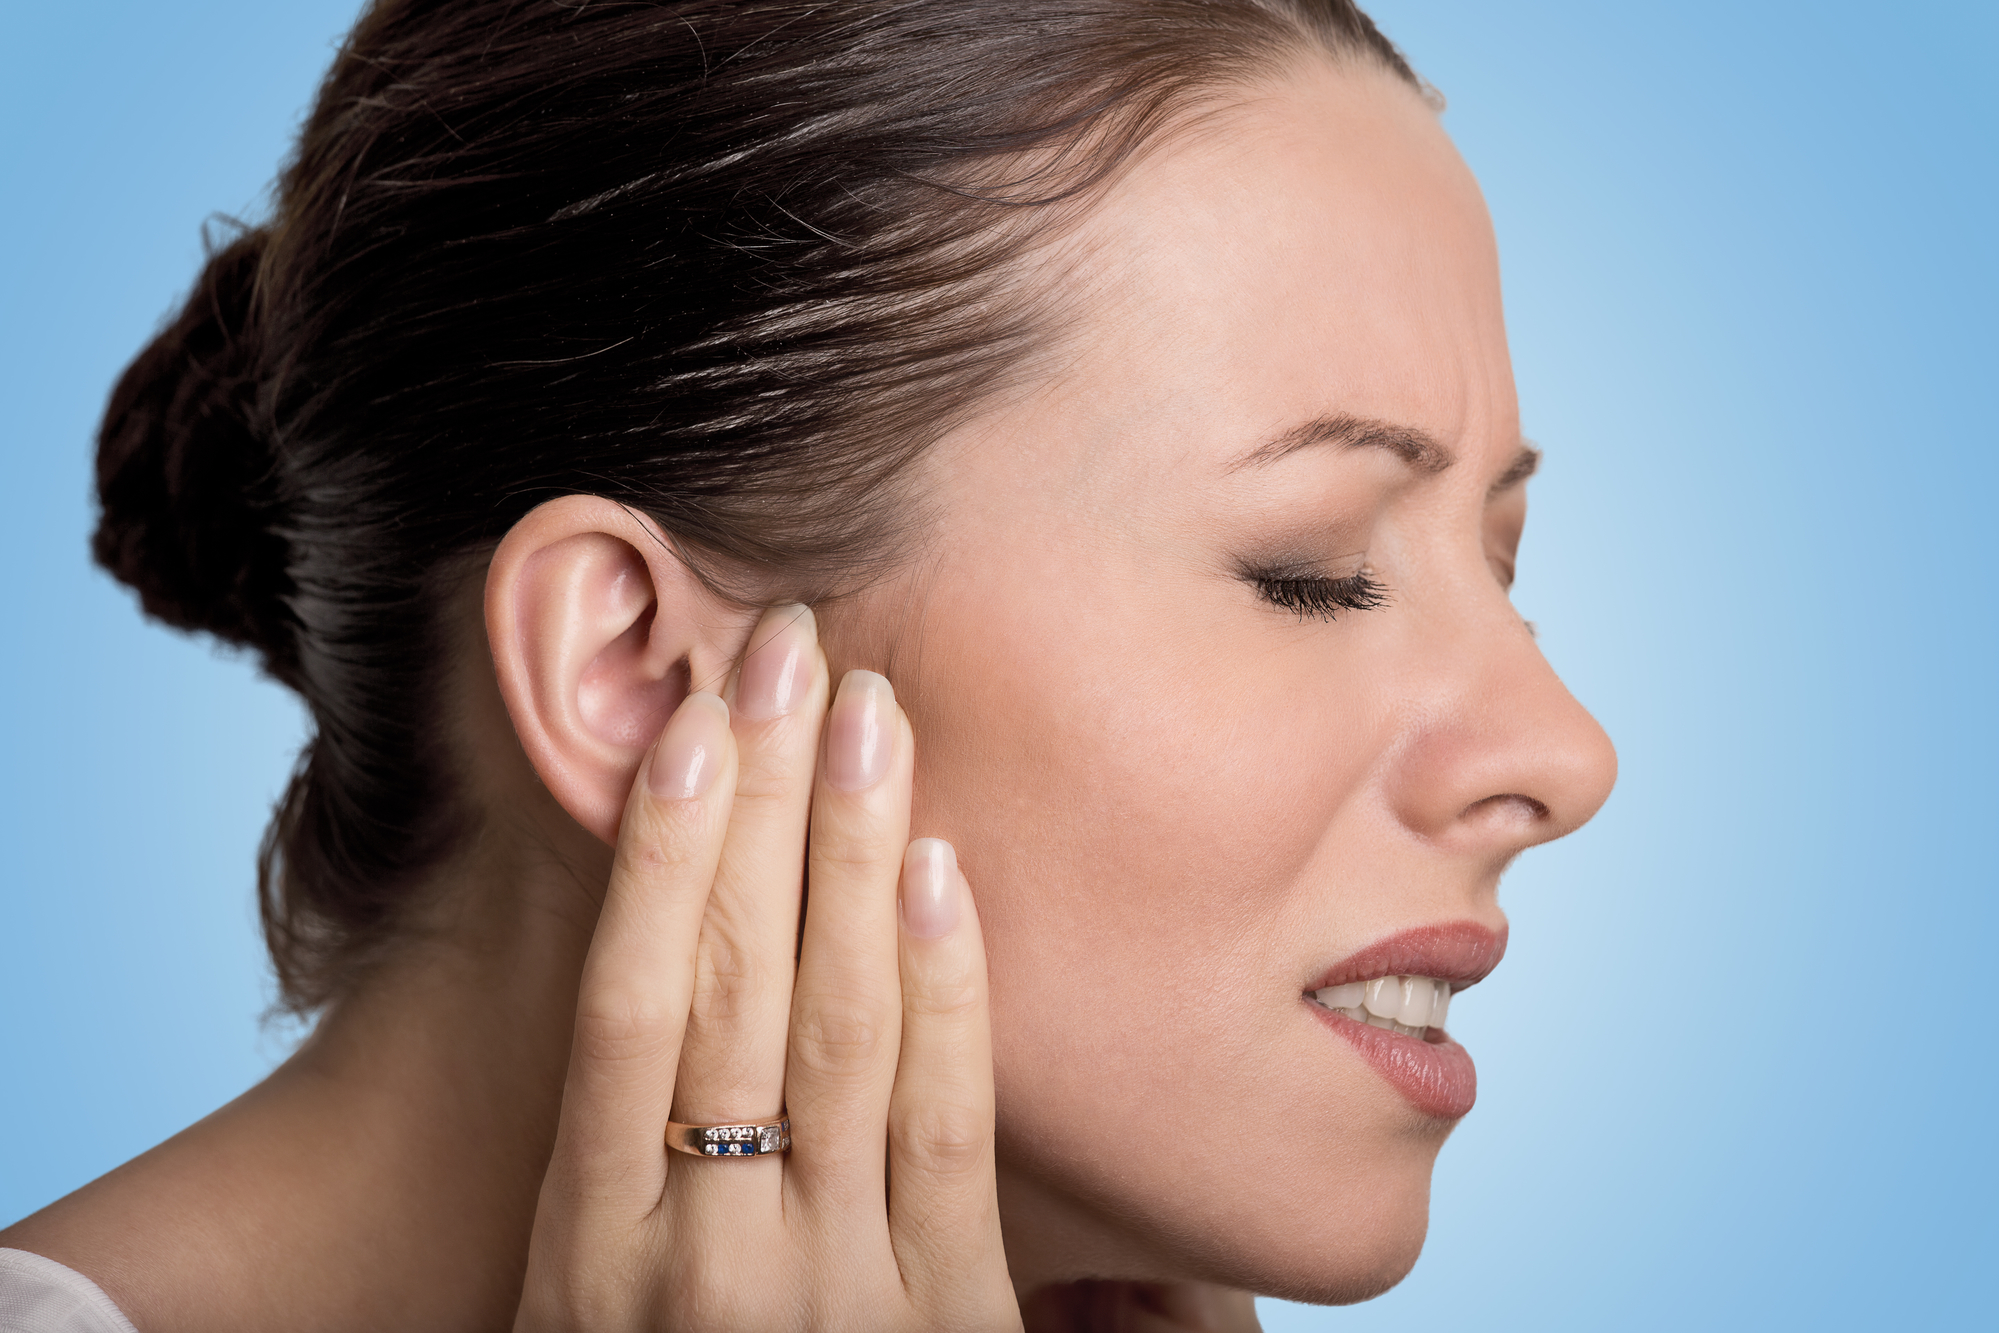 لماذا لا يزال البالغون عرضة للإصابة بعدوى الأذن؟